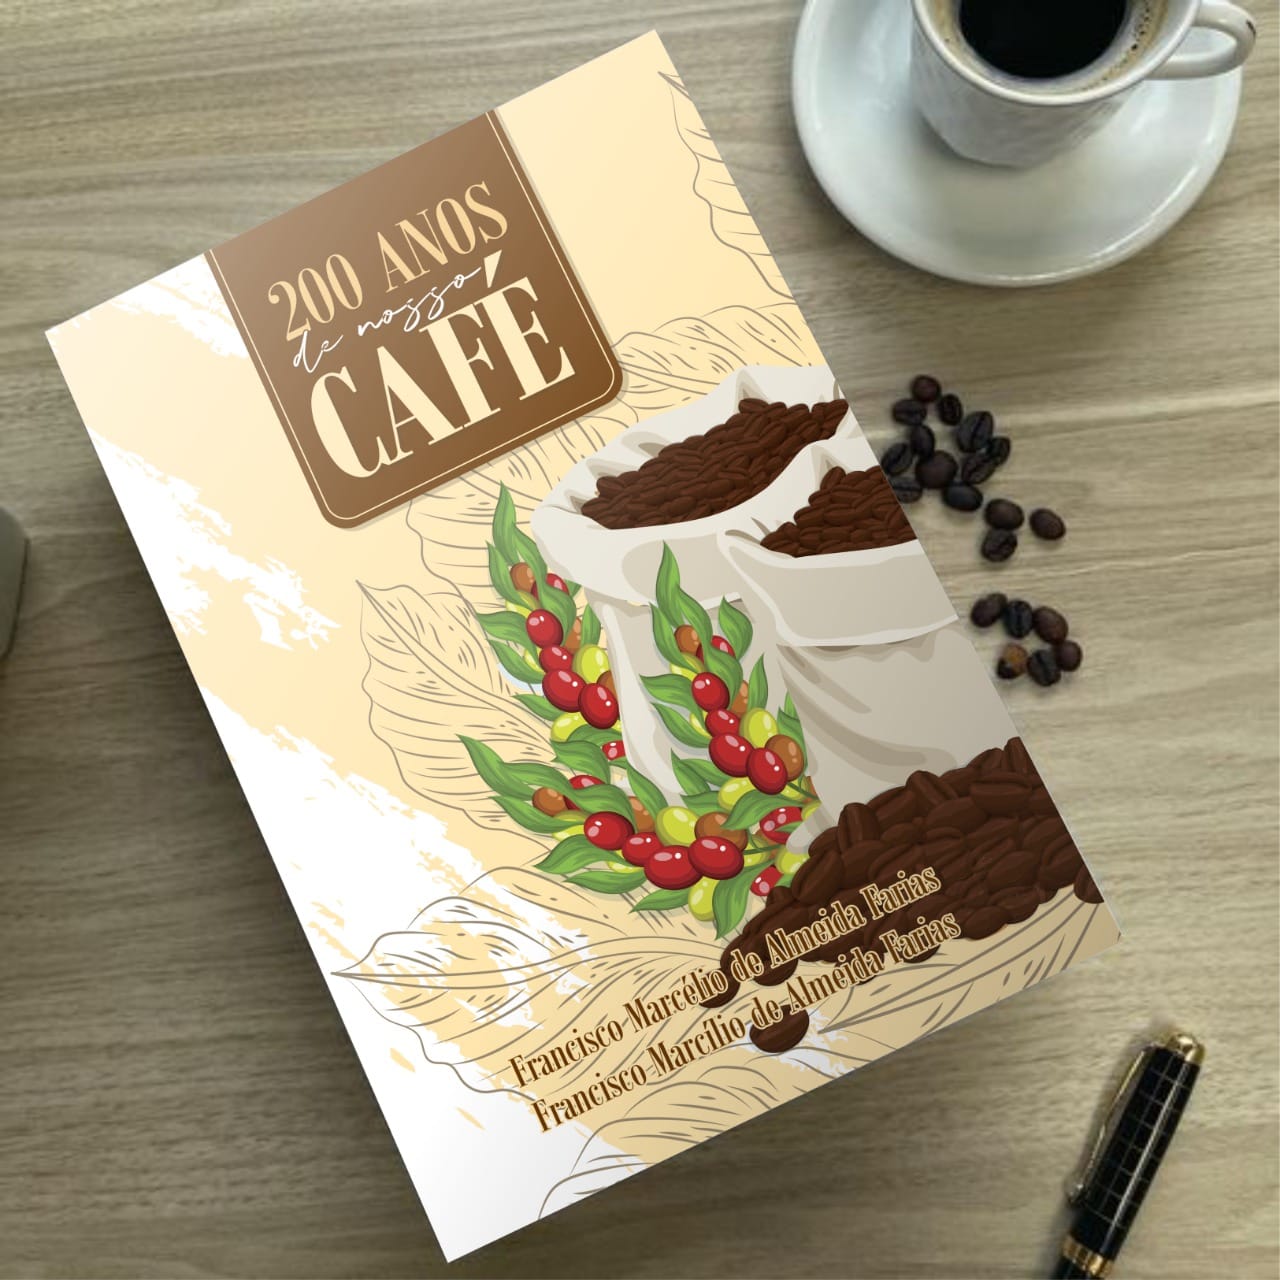 Brasterra patrocina livro que conta a história cafeeira da região serrana do Ceará